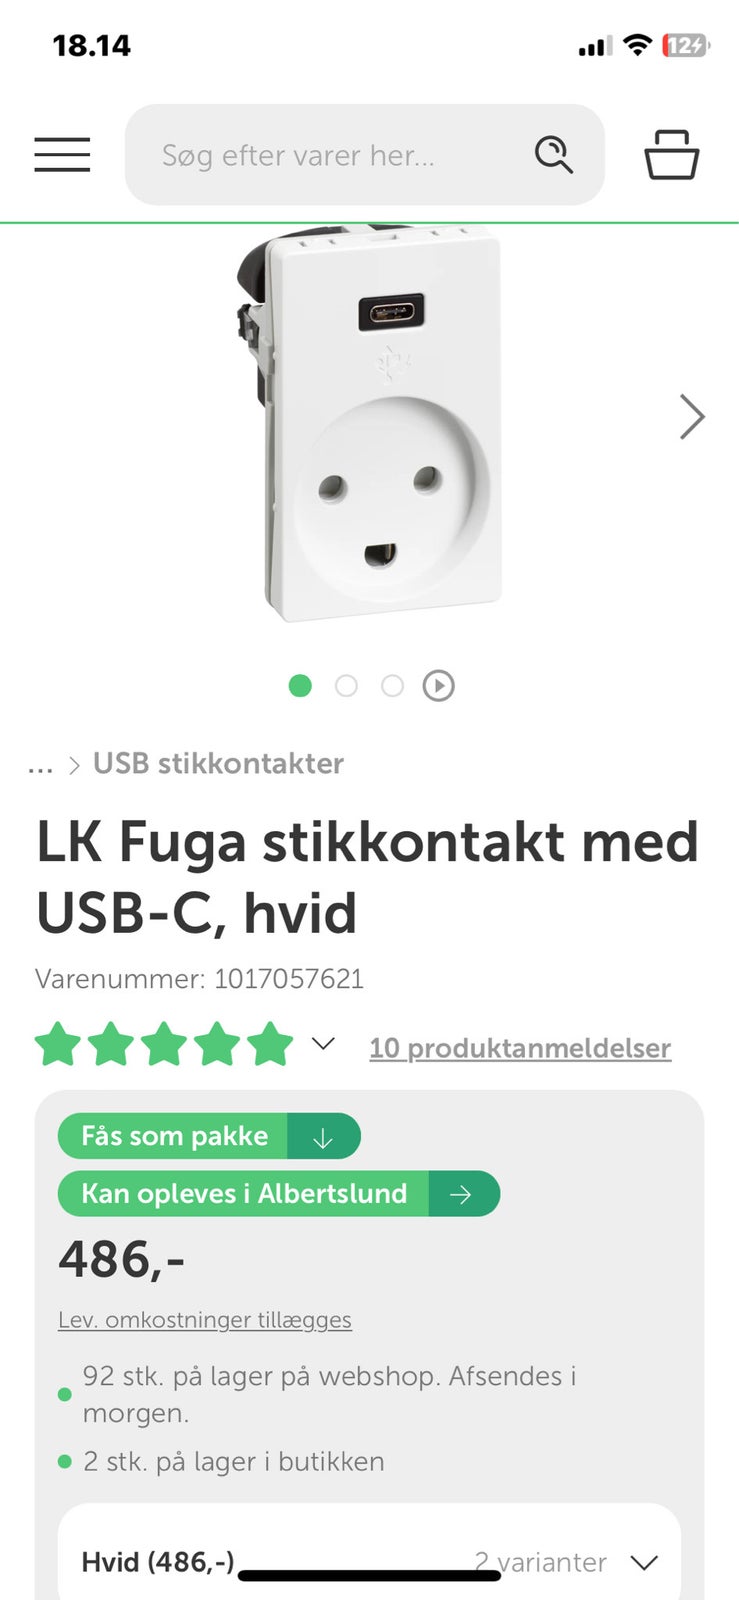 LK Fuga stikkontakt med USB-C, hvid